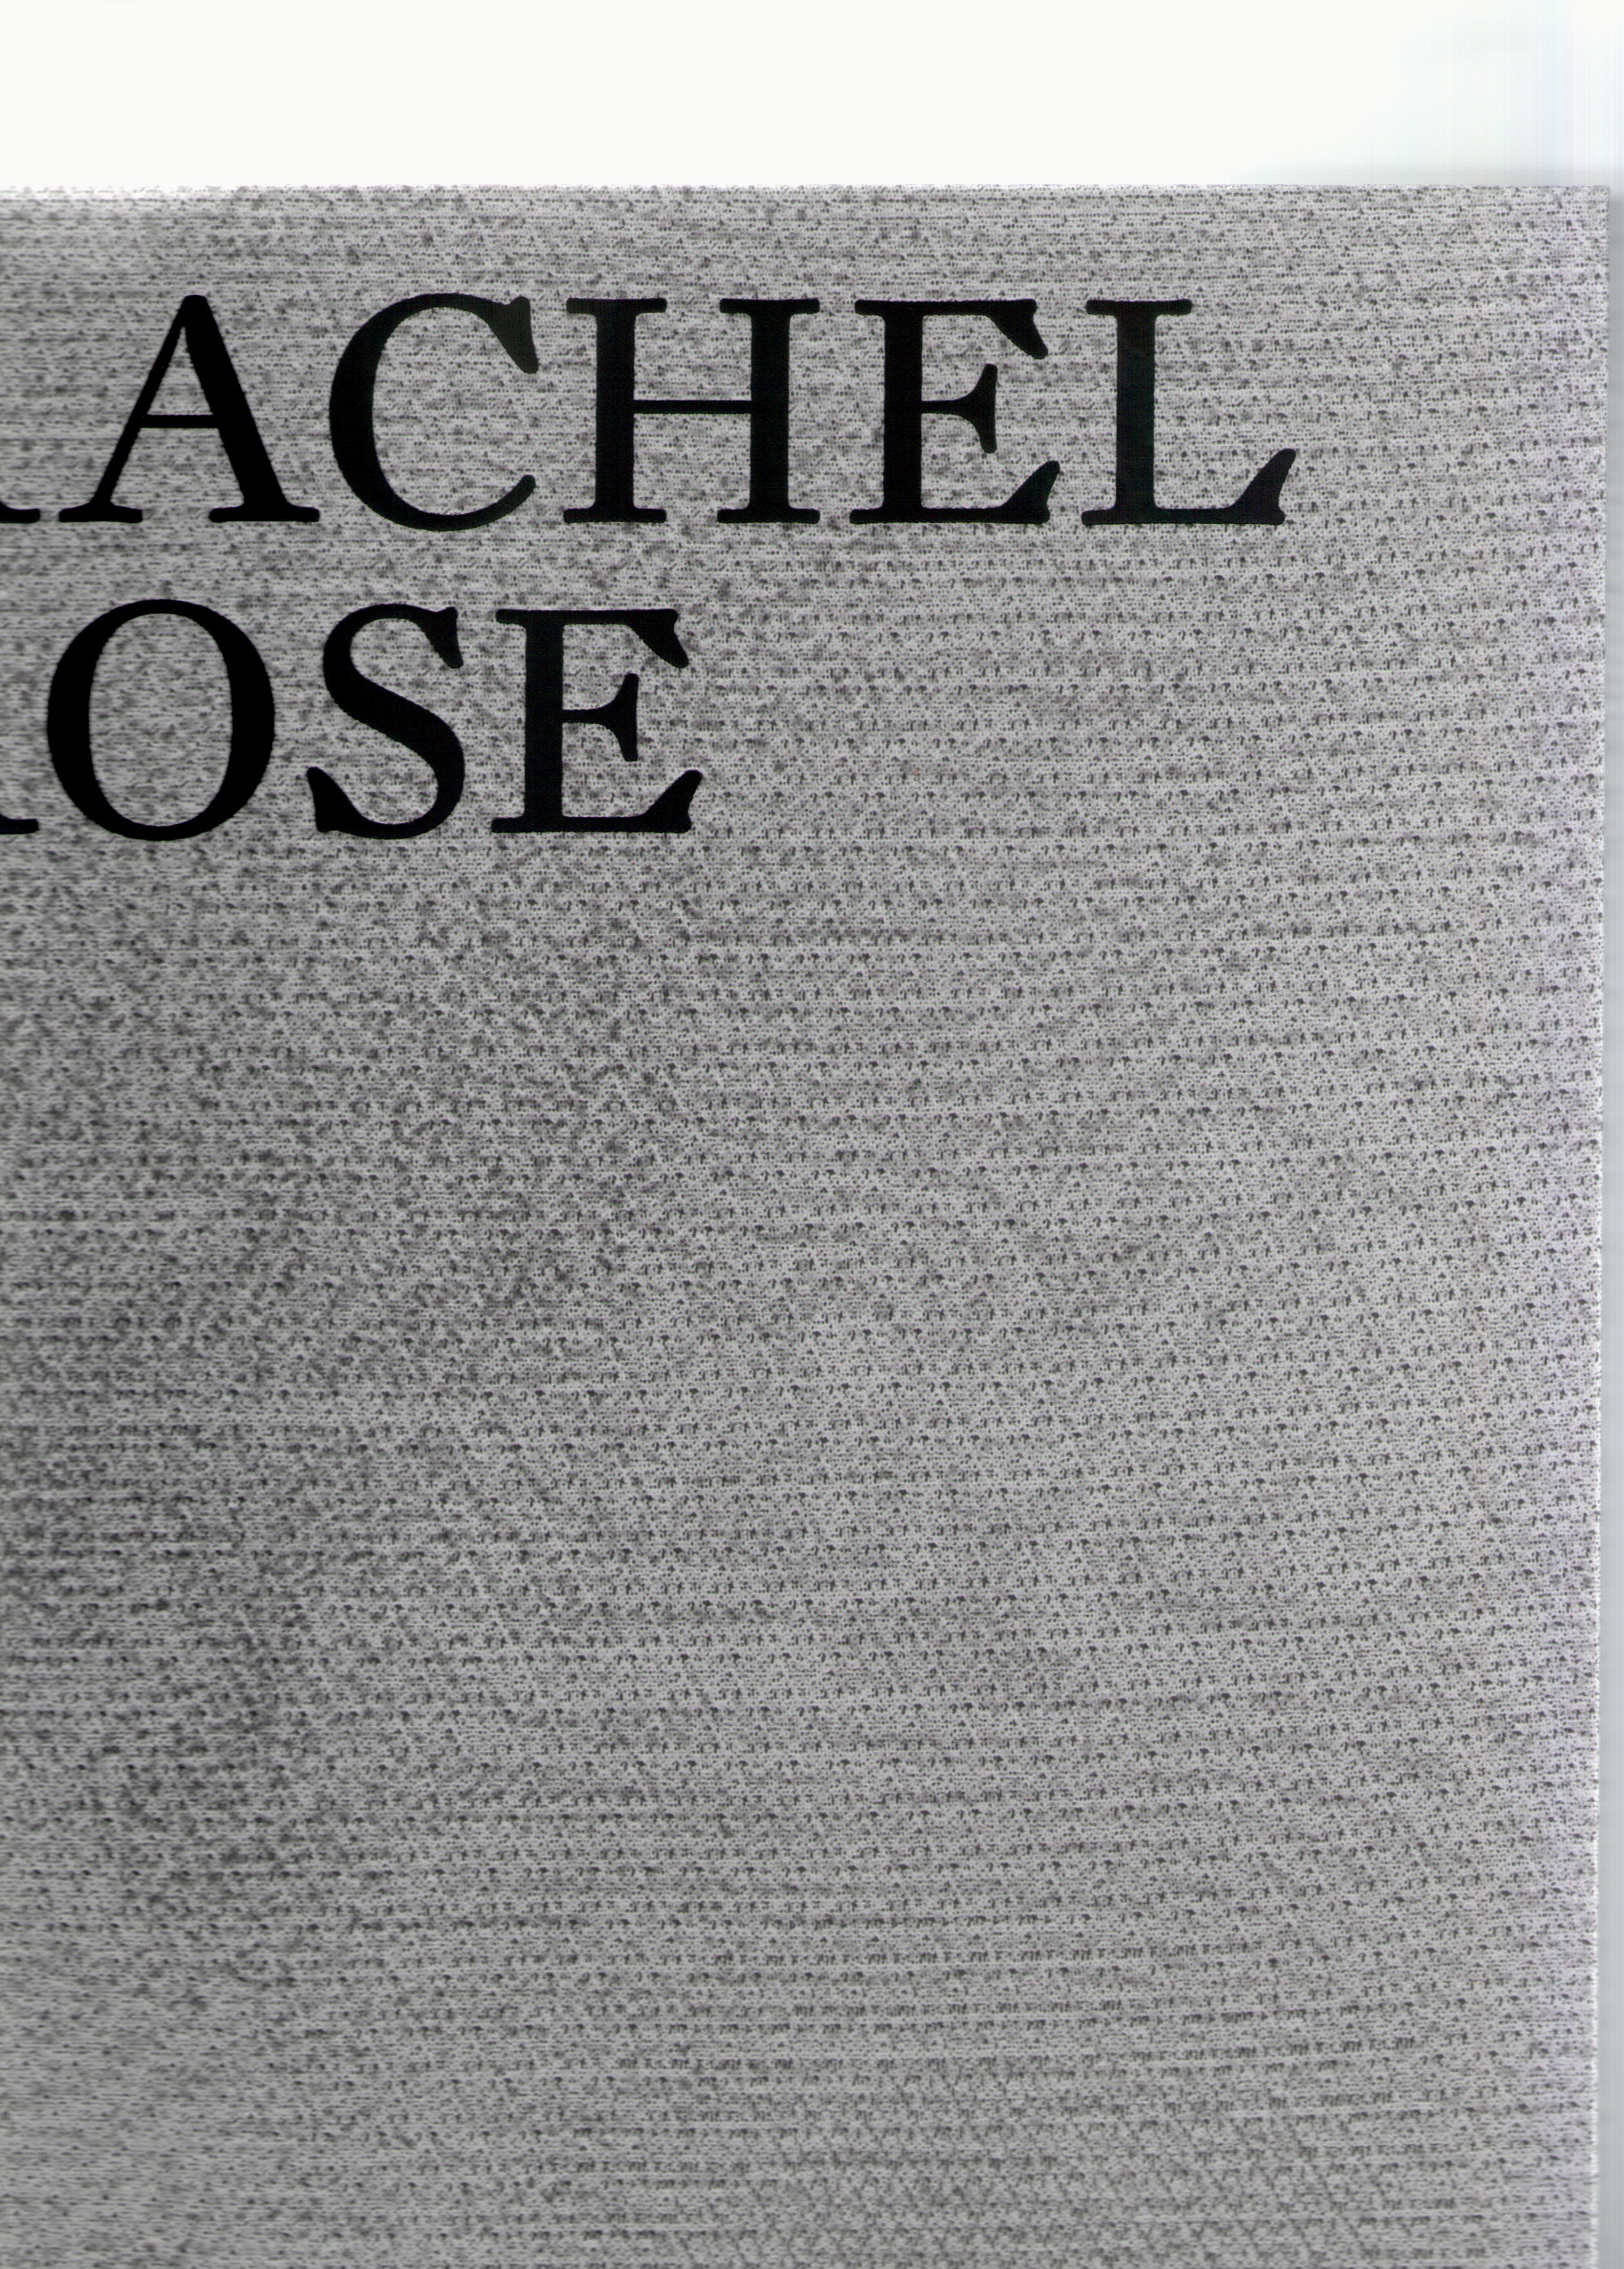 ROSE, Rachel - Rachel Rose